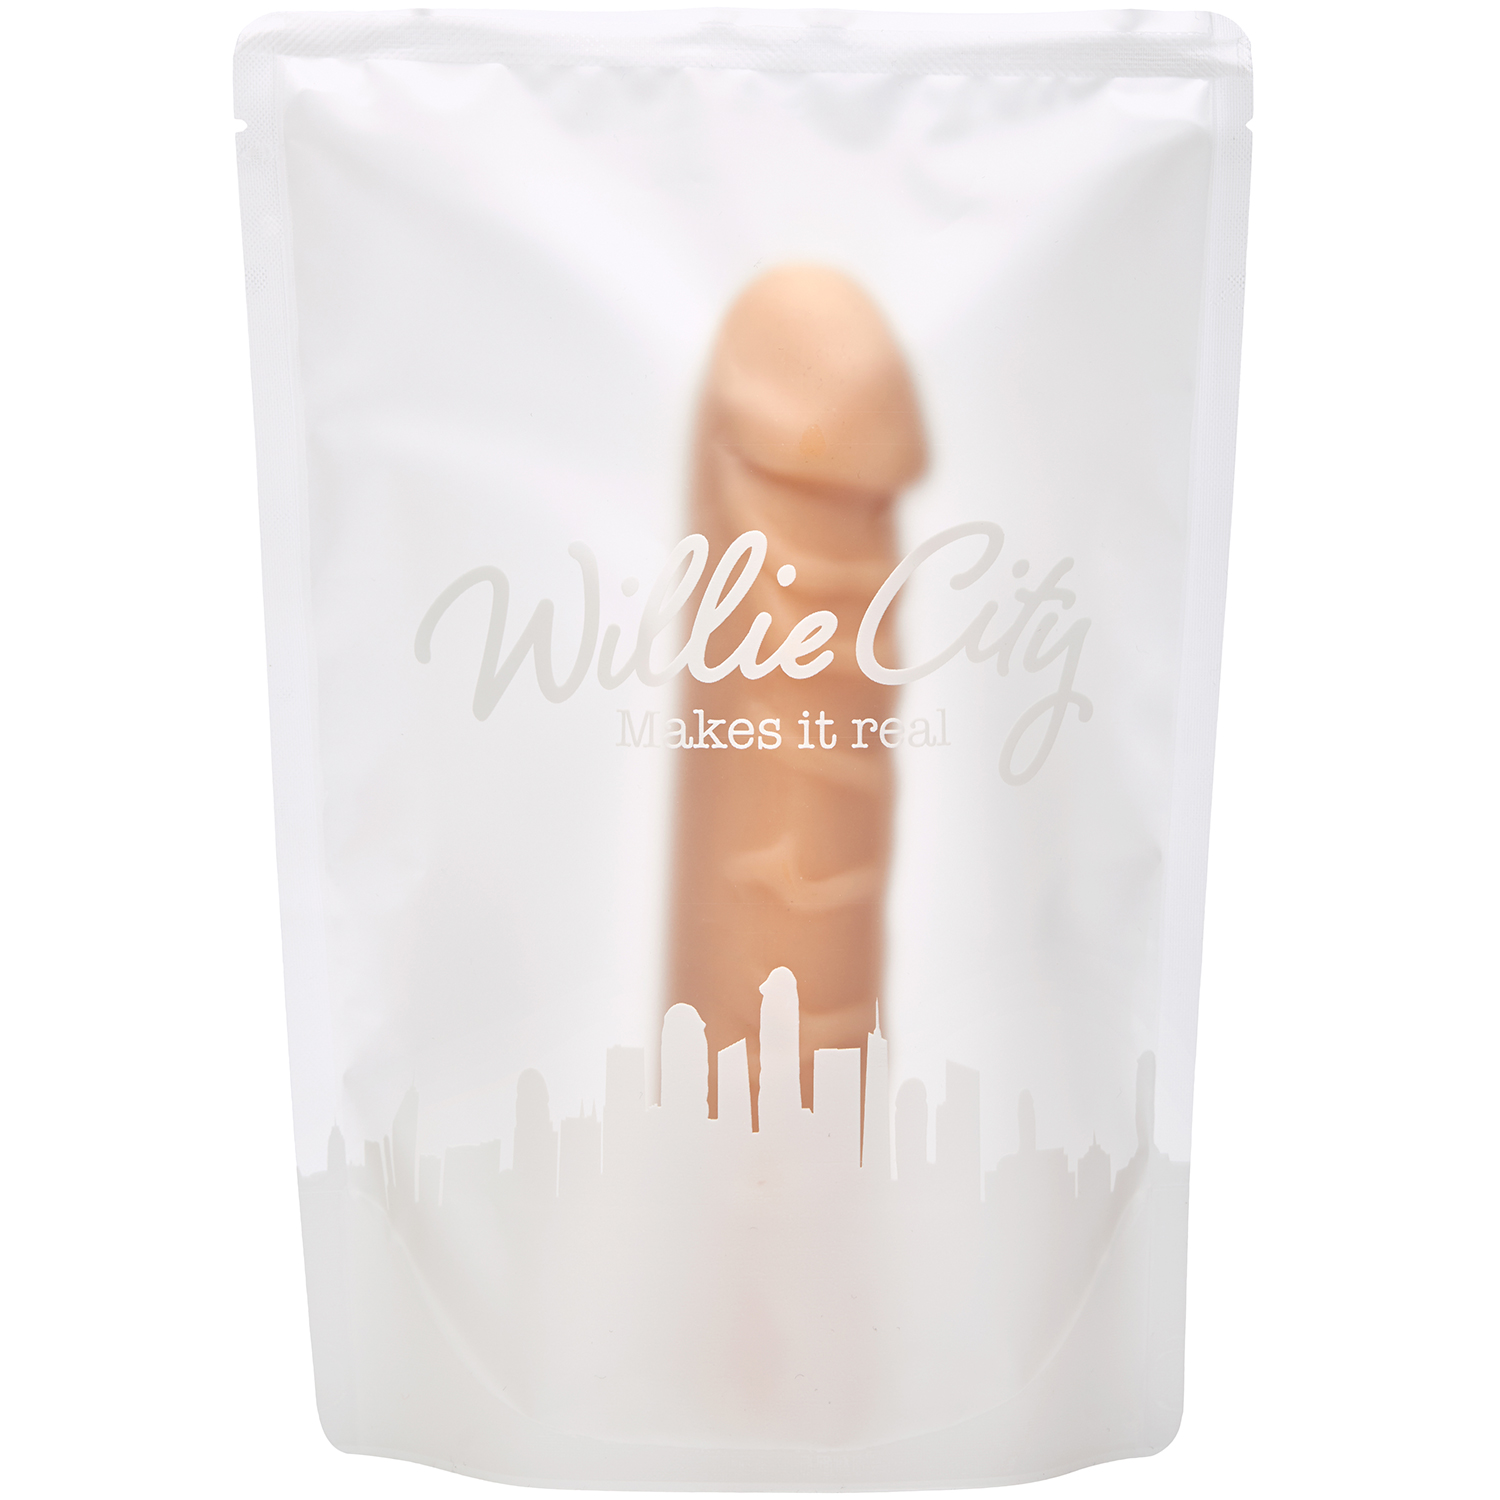 Willie City Lover Realistisk Dildo 19 cm thumbnail